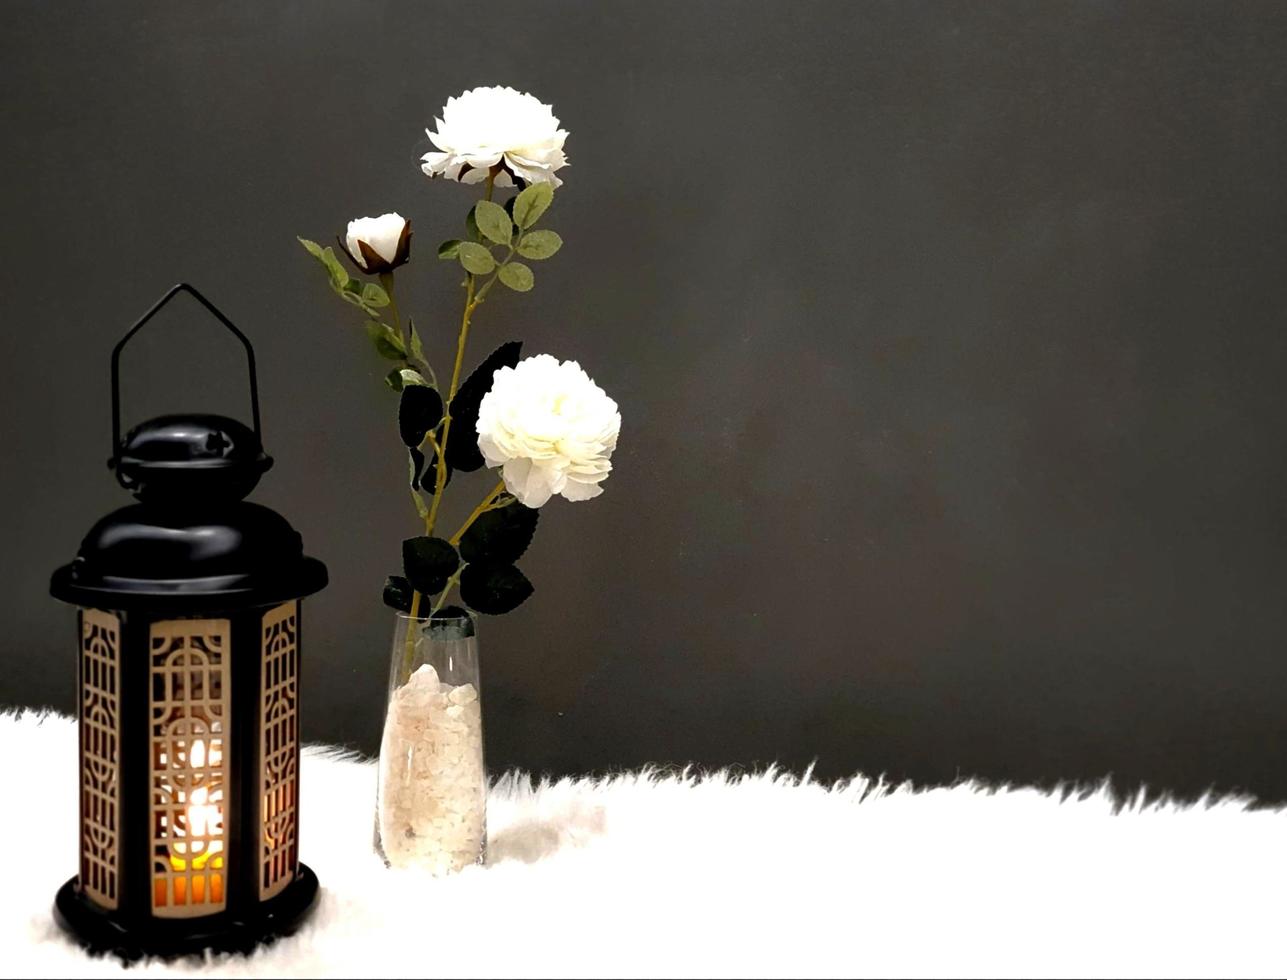 Die Ramadan-Laterne ist schwarz, leuchtend und ihre Seiten sind mit Holzdekorationen verziert, die neben einer kleinen Vase stehen, die weiße Kristalle enthält und auch einige weiße Rosen trägt, beides foto